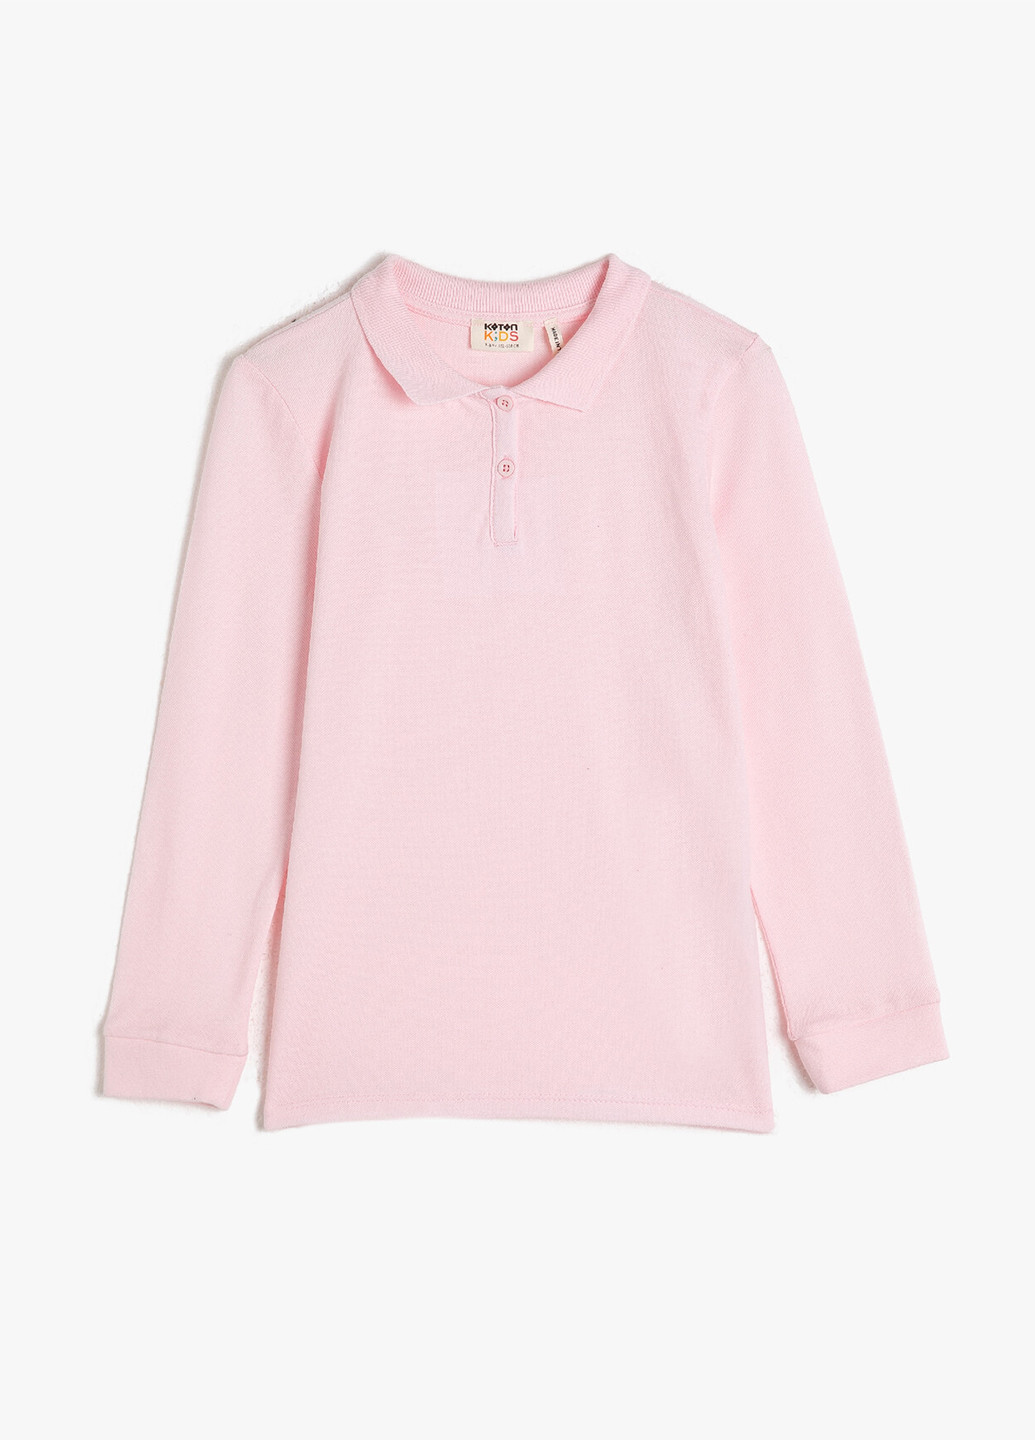 Светло-розовая детская футболка-поло для девочки KOTON однотонная